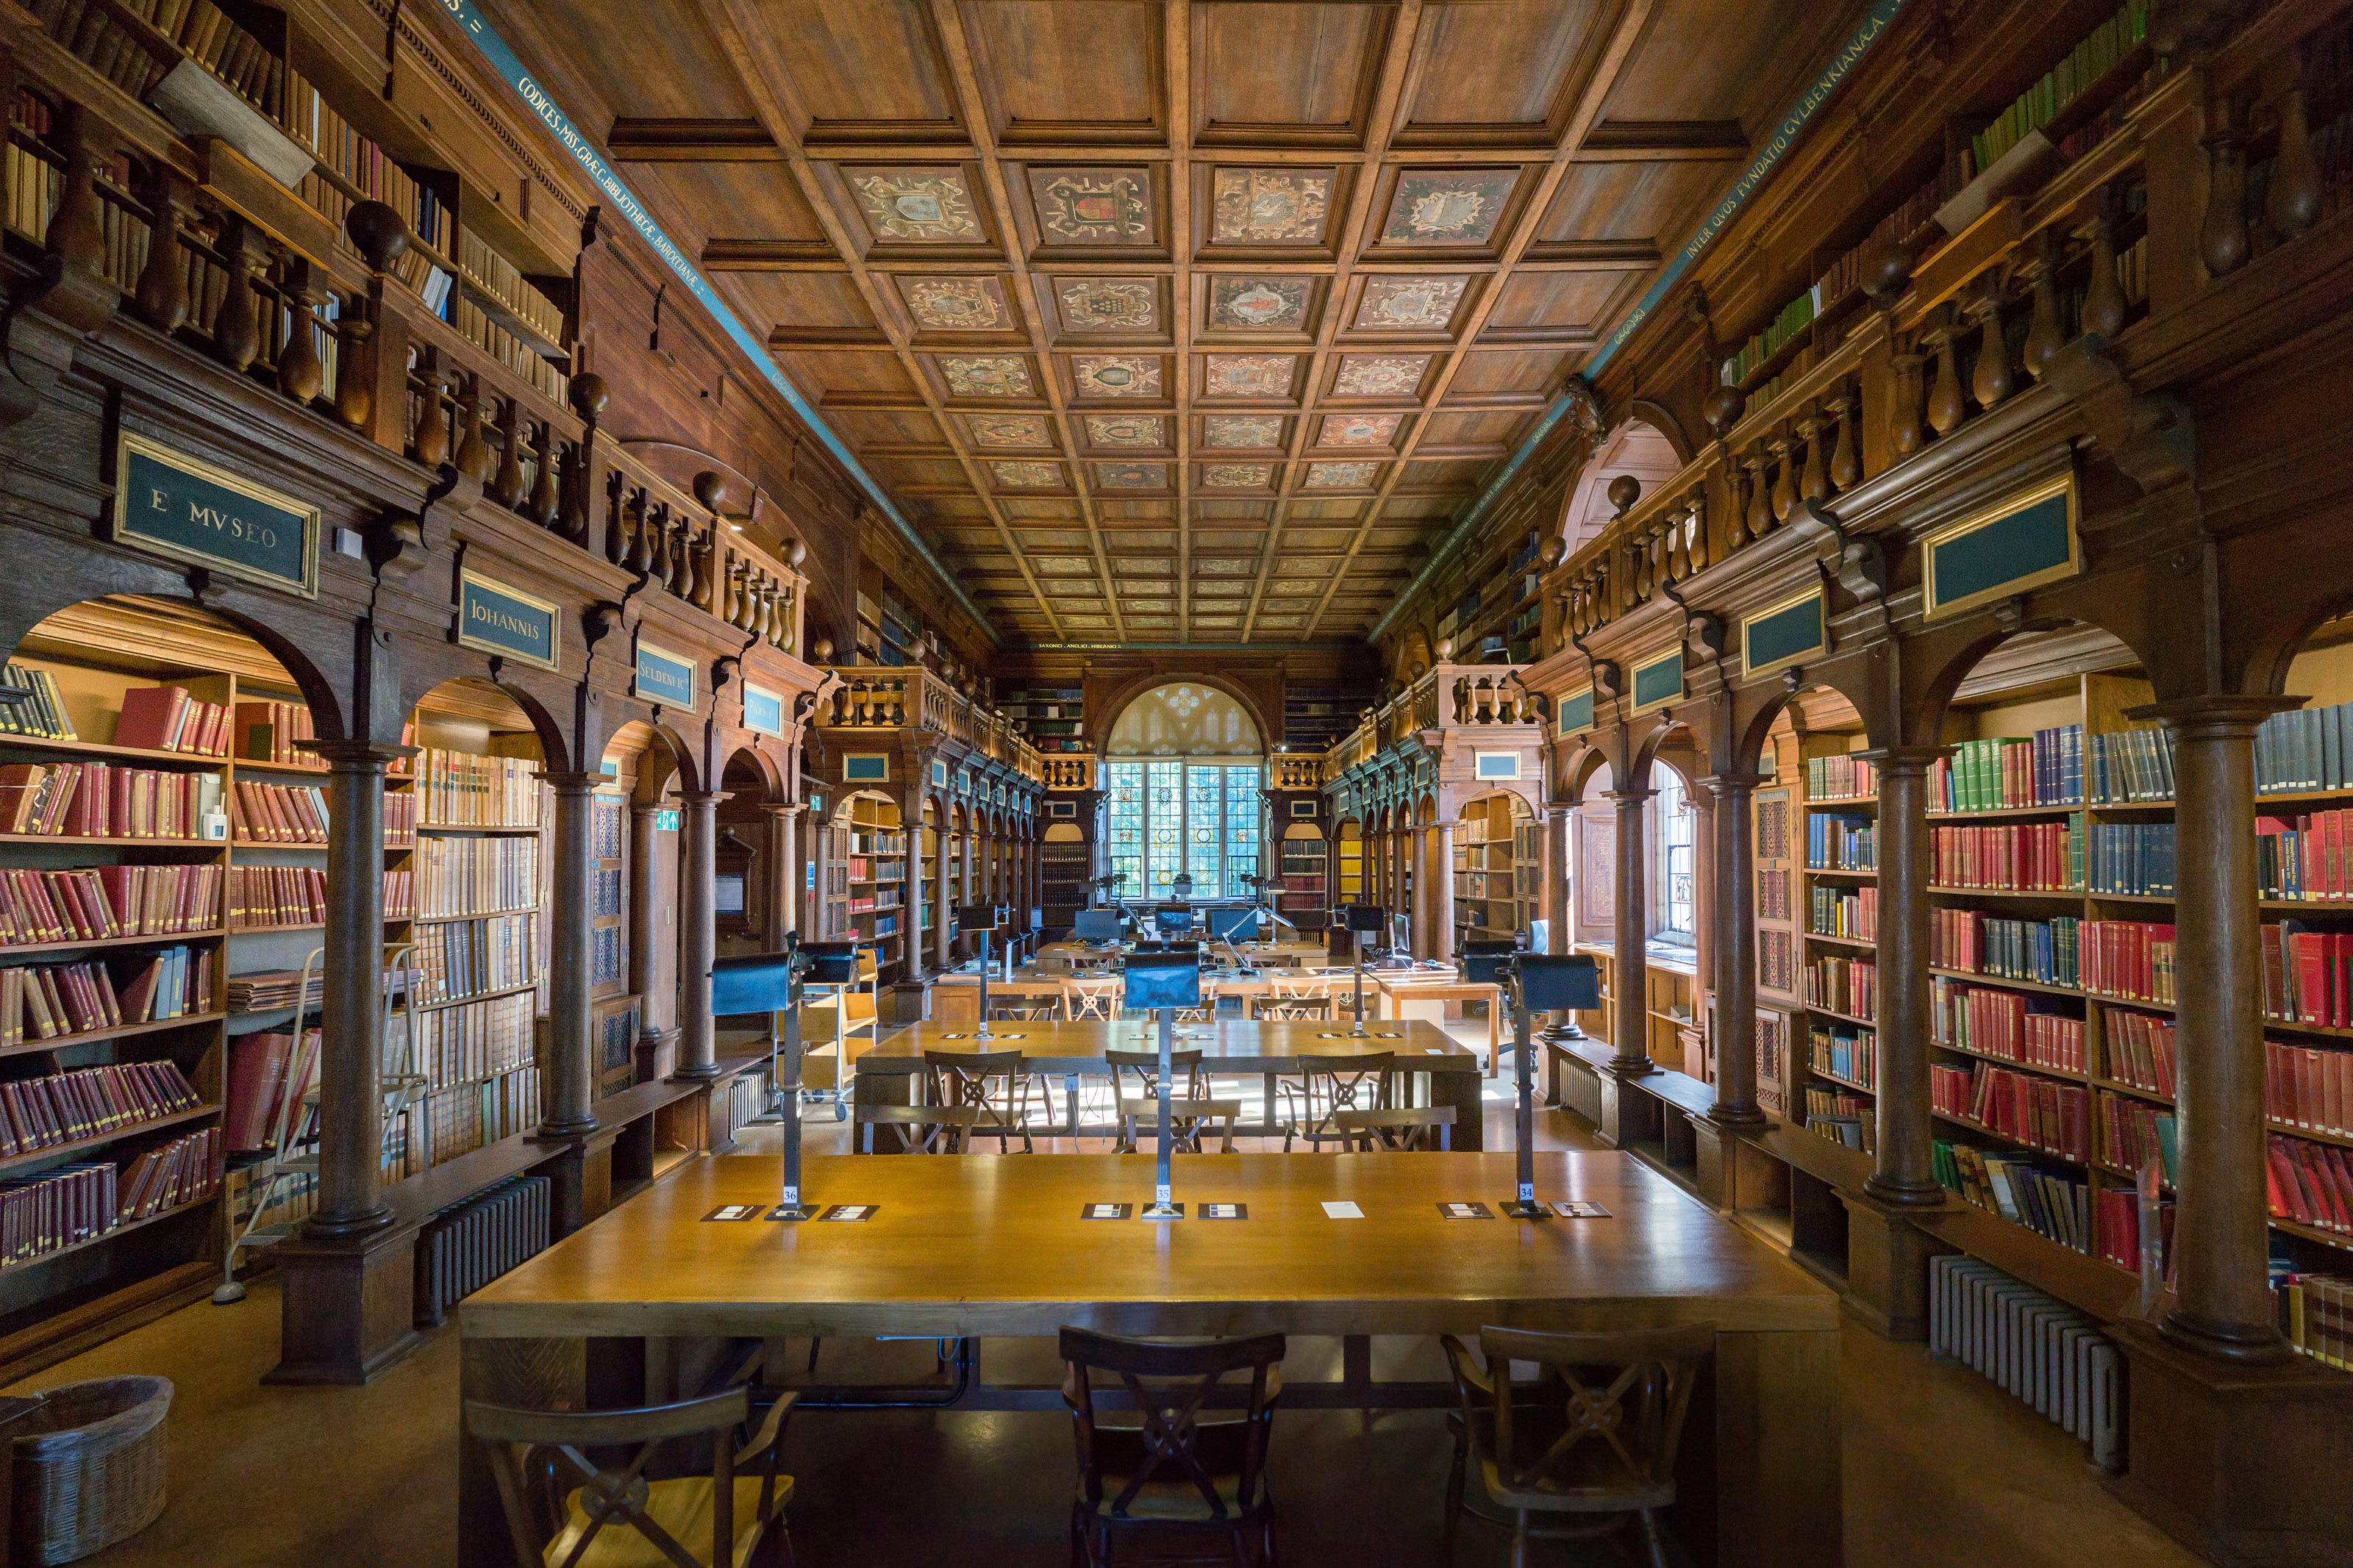 Library 1.8. Бодлианская библиотека Оксфорд. Оксфорд университет библиотека. Библиотека (Bodleian Library) Оксфорда. Бодлианская библиотека Оксфордского университета (Оксфорд, 1602).